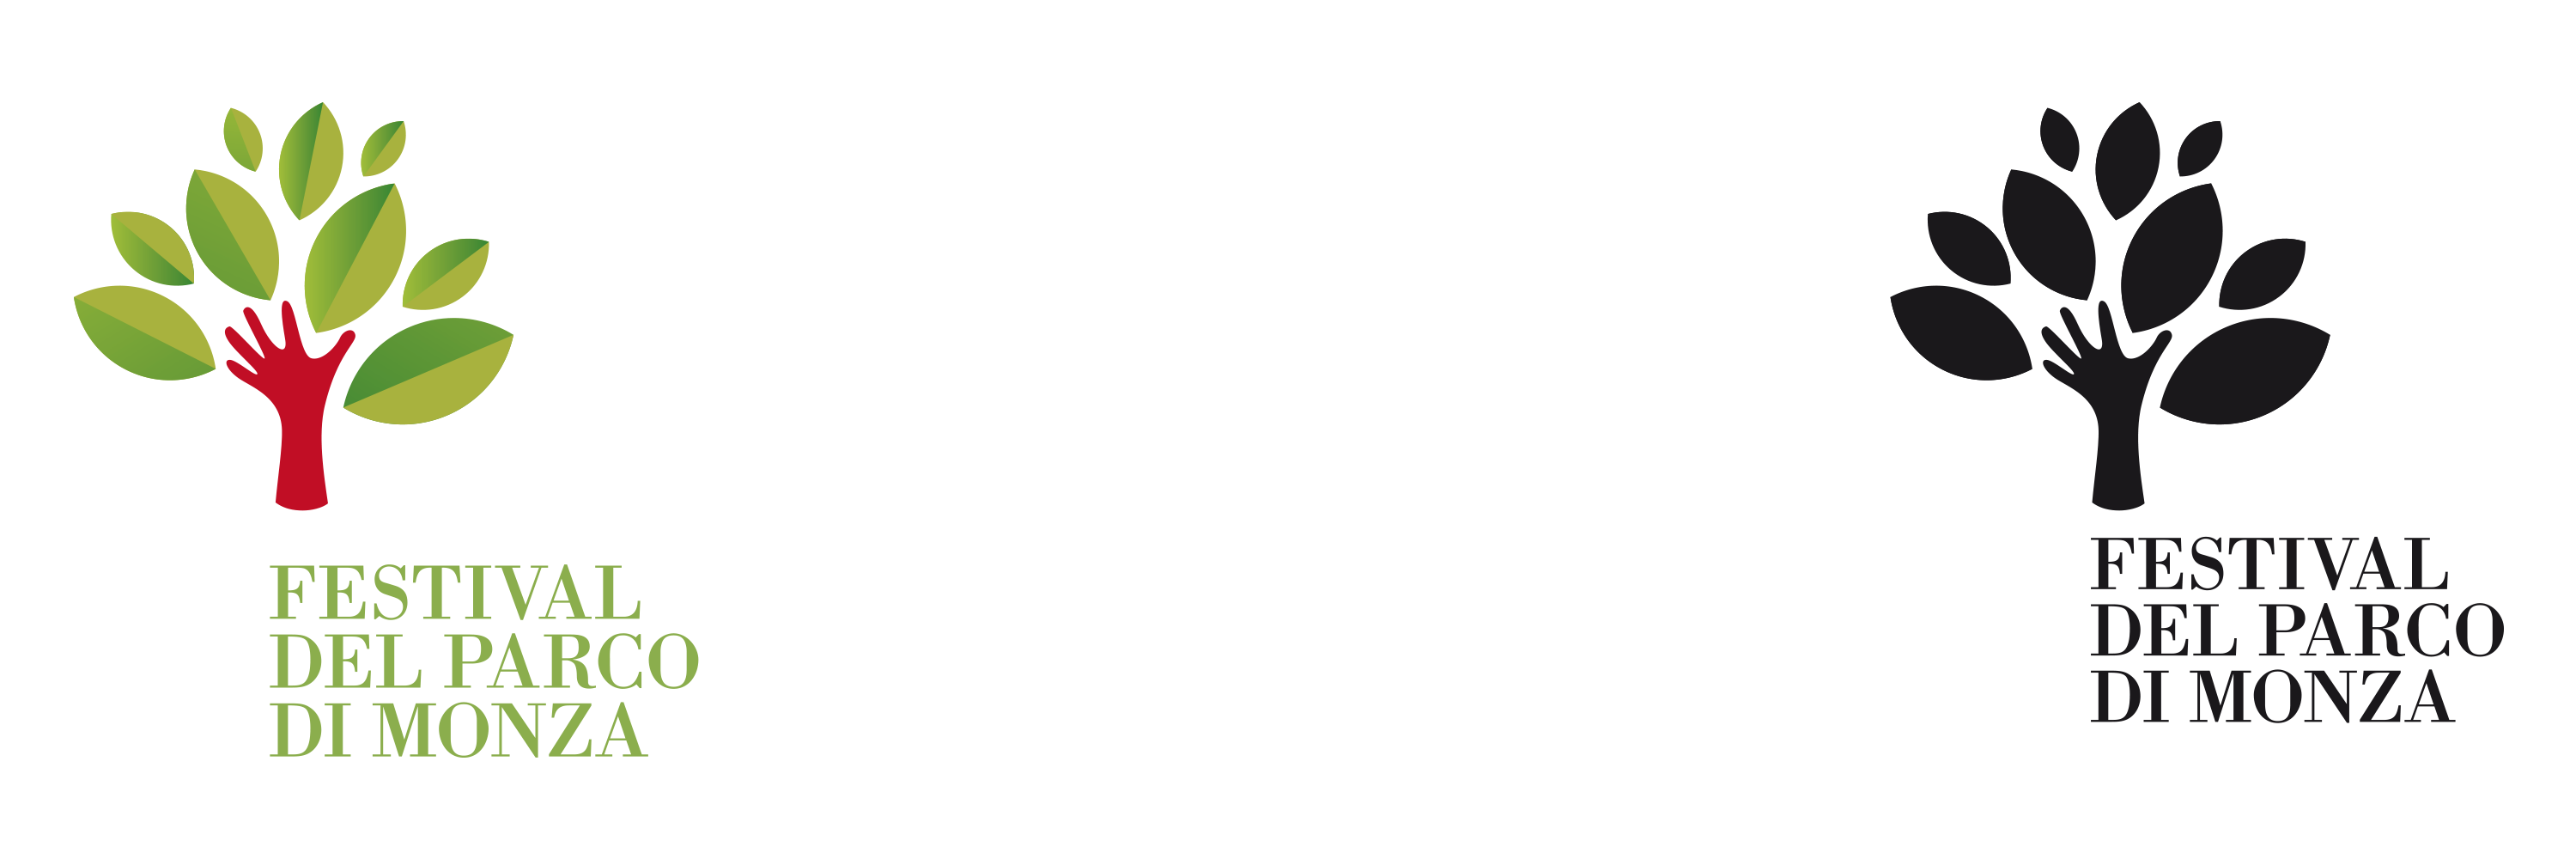 02 festival parco monza